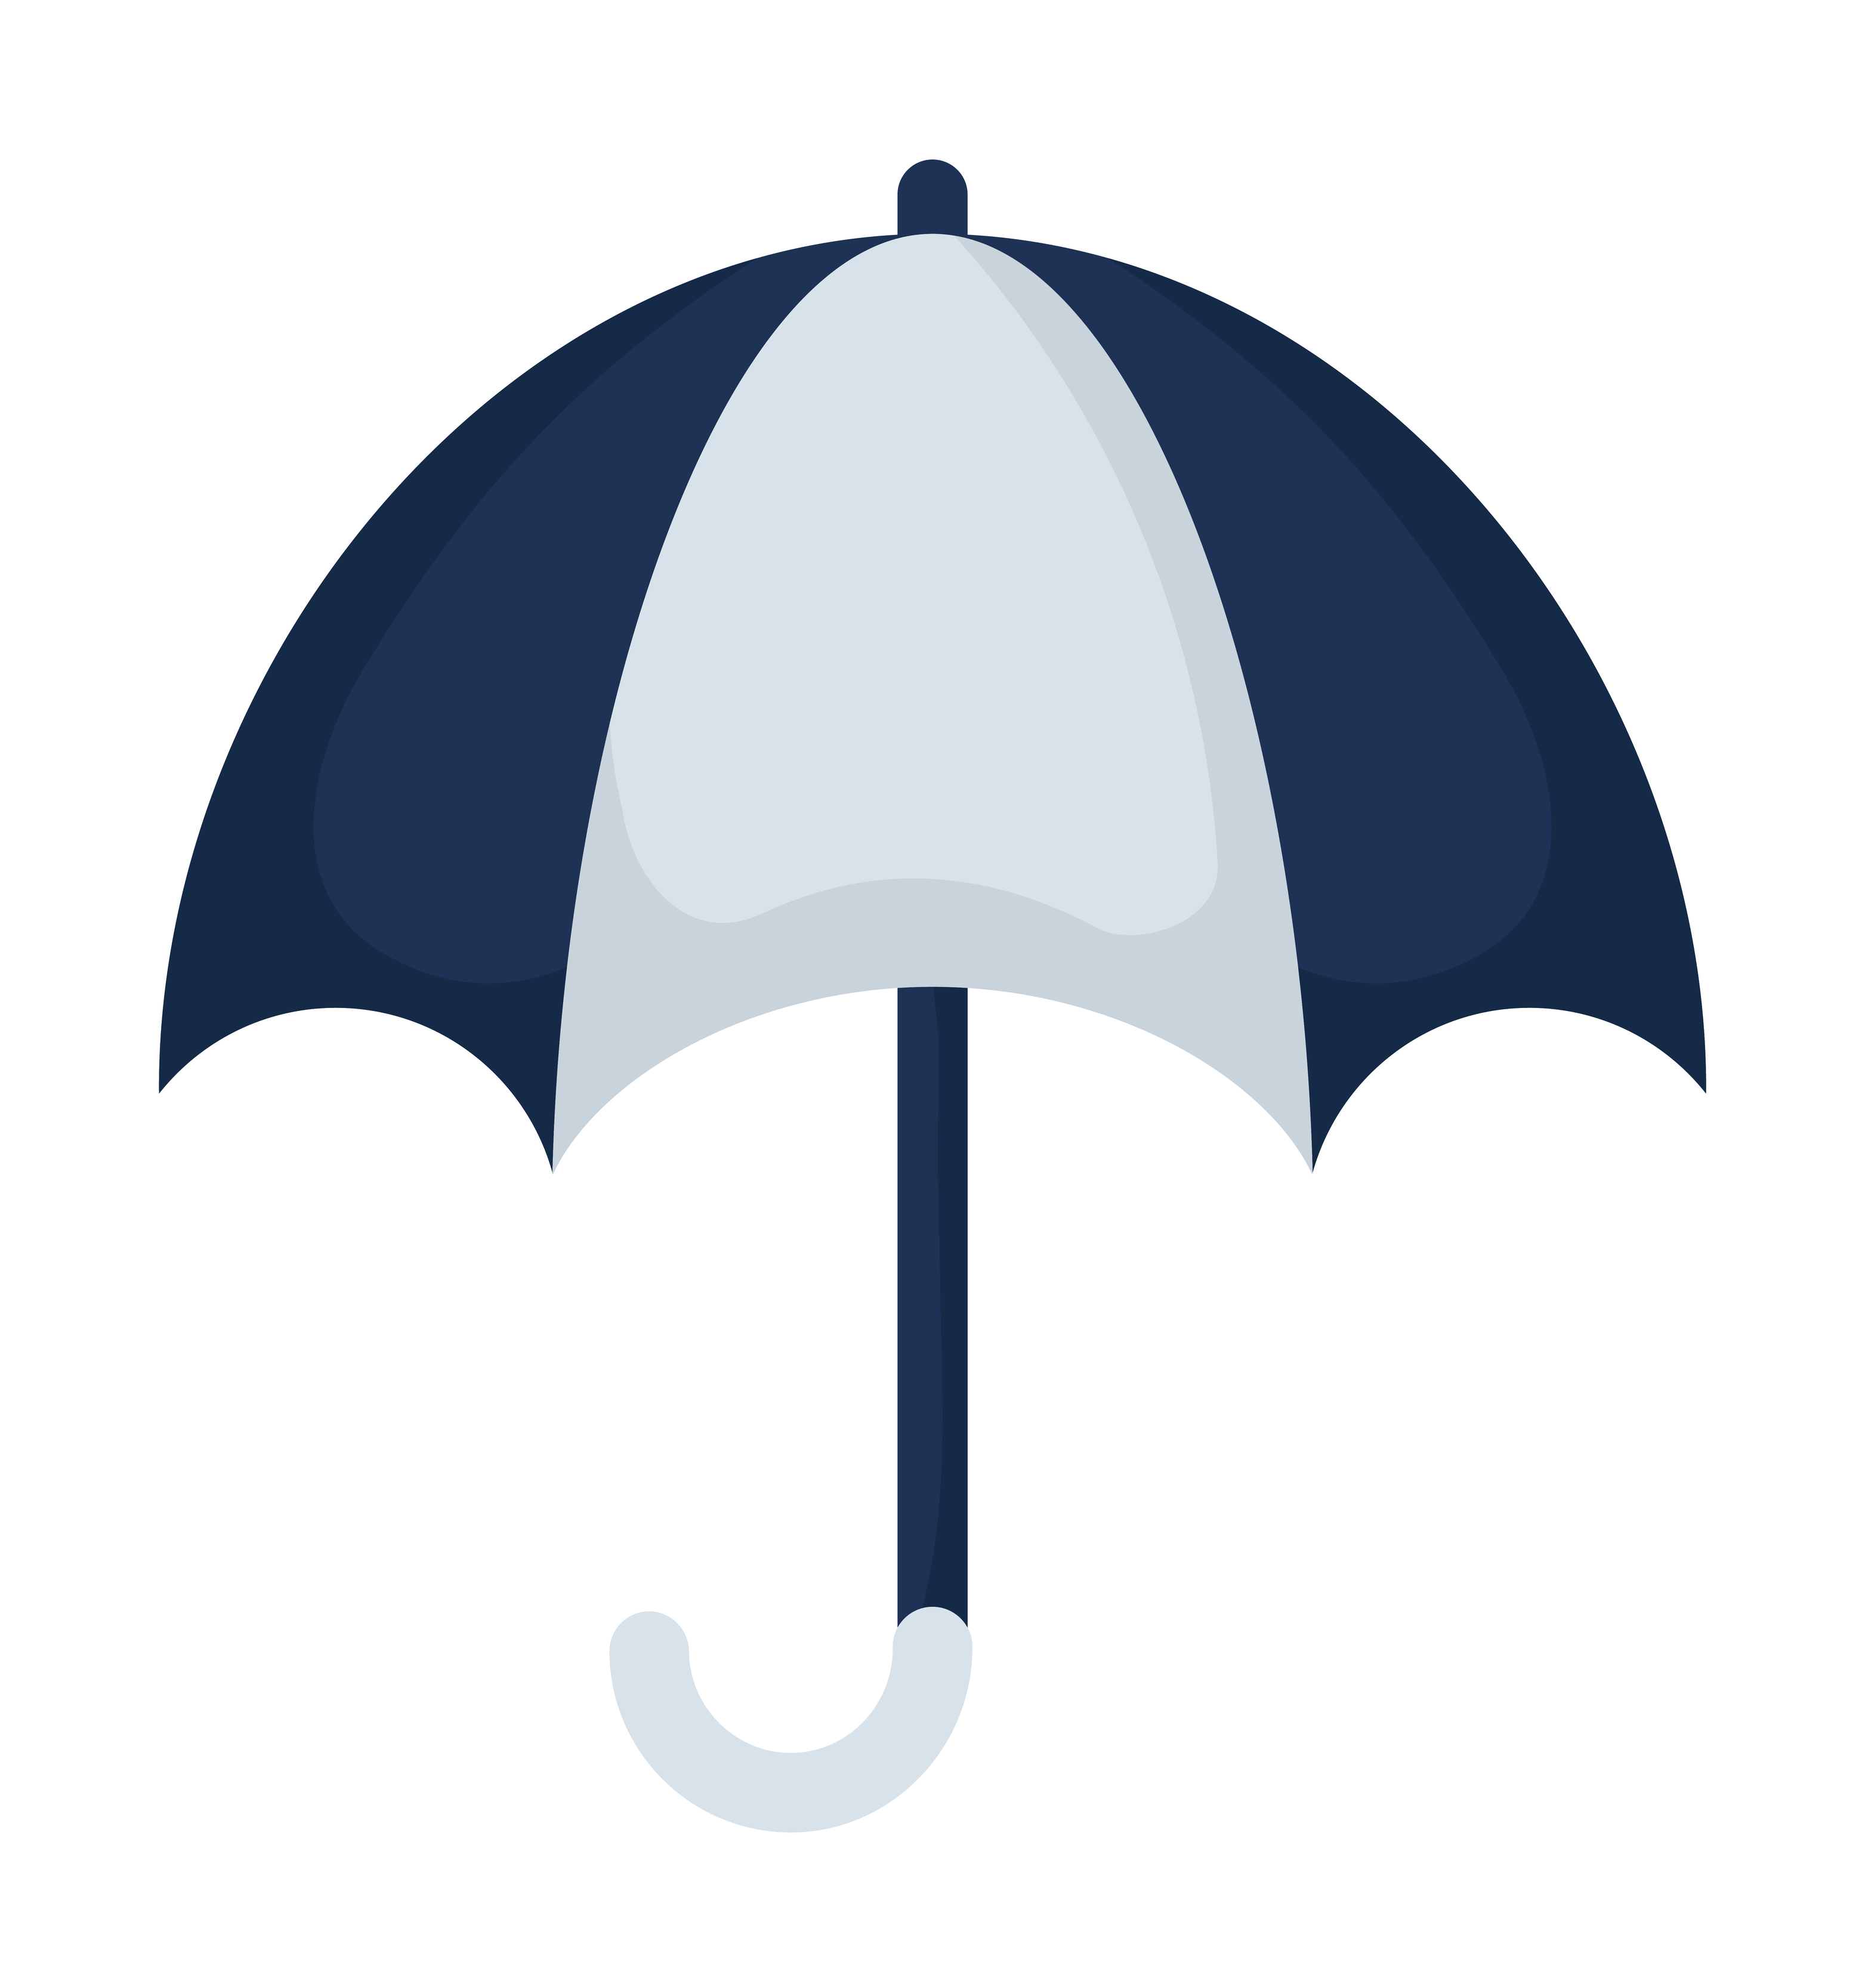 belle conception de parapluie 4429667 - Telecharger Vectoriel Gratuit,  Clipart Graphique, Vecteur Dessins et Pictogramme Gratuit